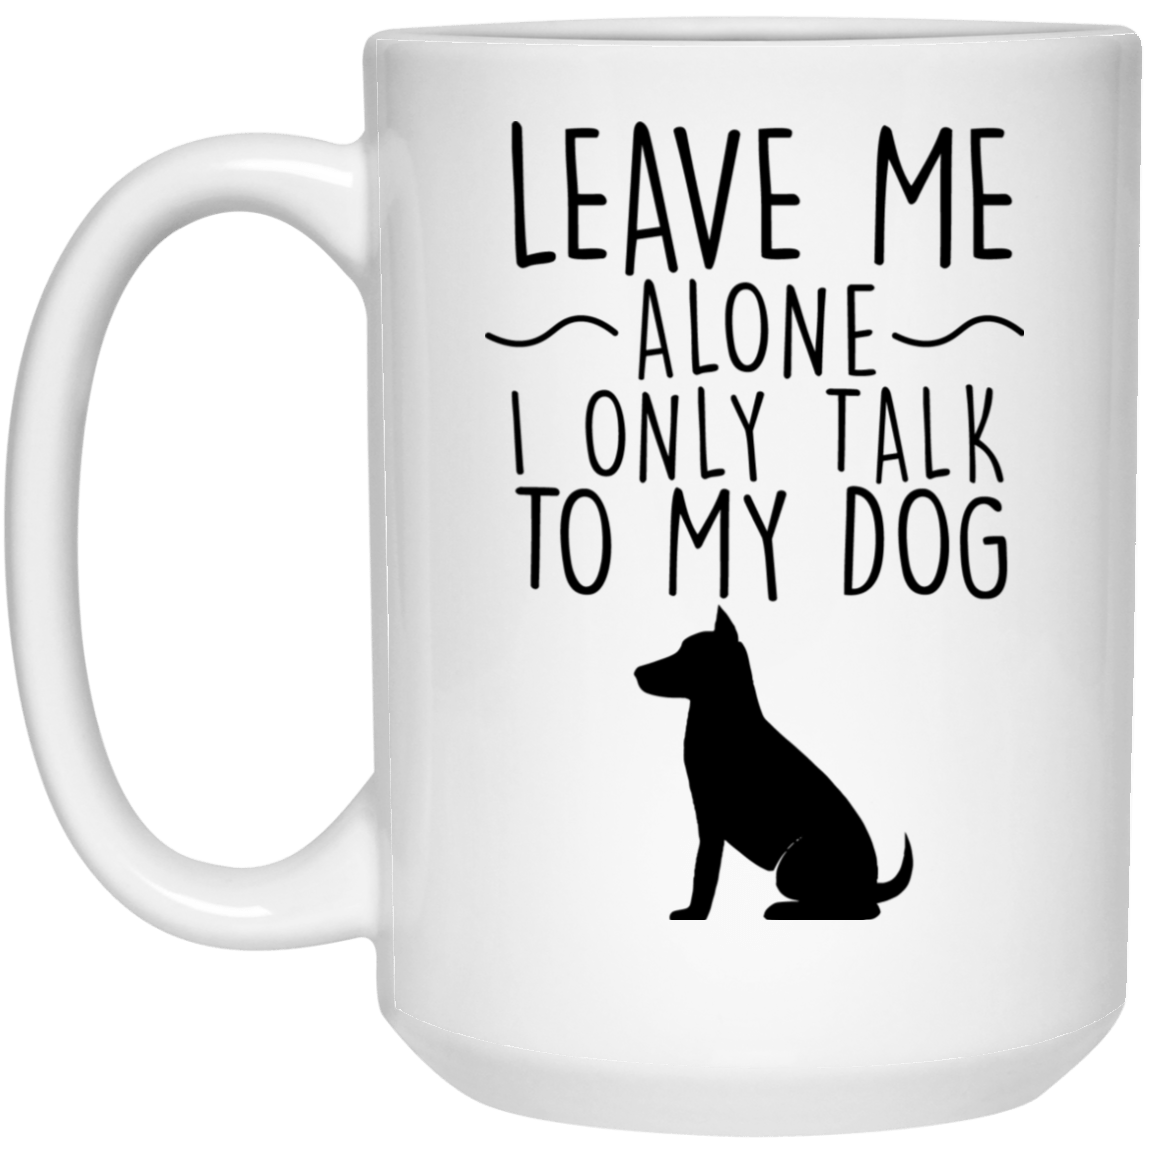 Leave Me Alone - Mugs.